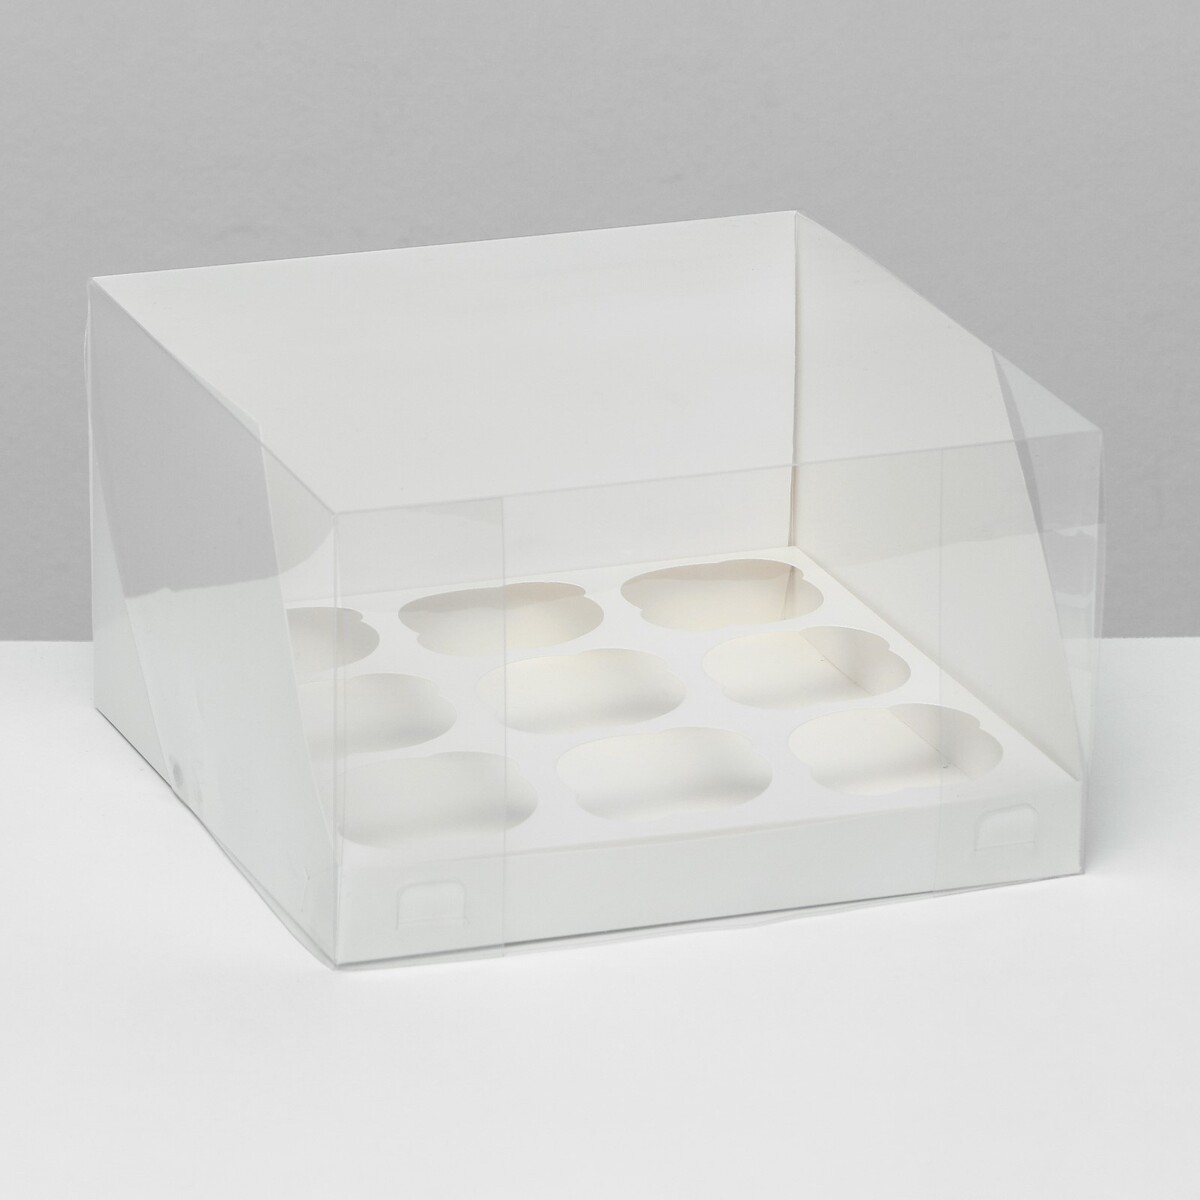 Кондитерская складная коробка для 9 капкейков белая 23,5 x 23 x 14 см кондитерская складная коробка для 6 капкейков 23 5 х 16 х 10 голубая